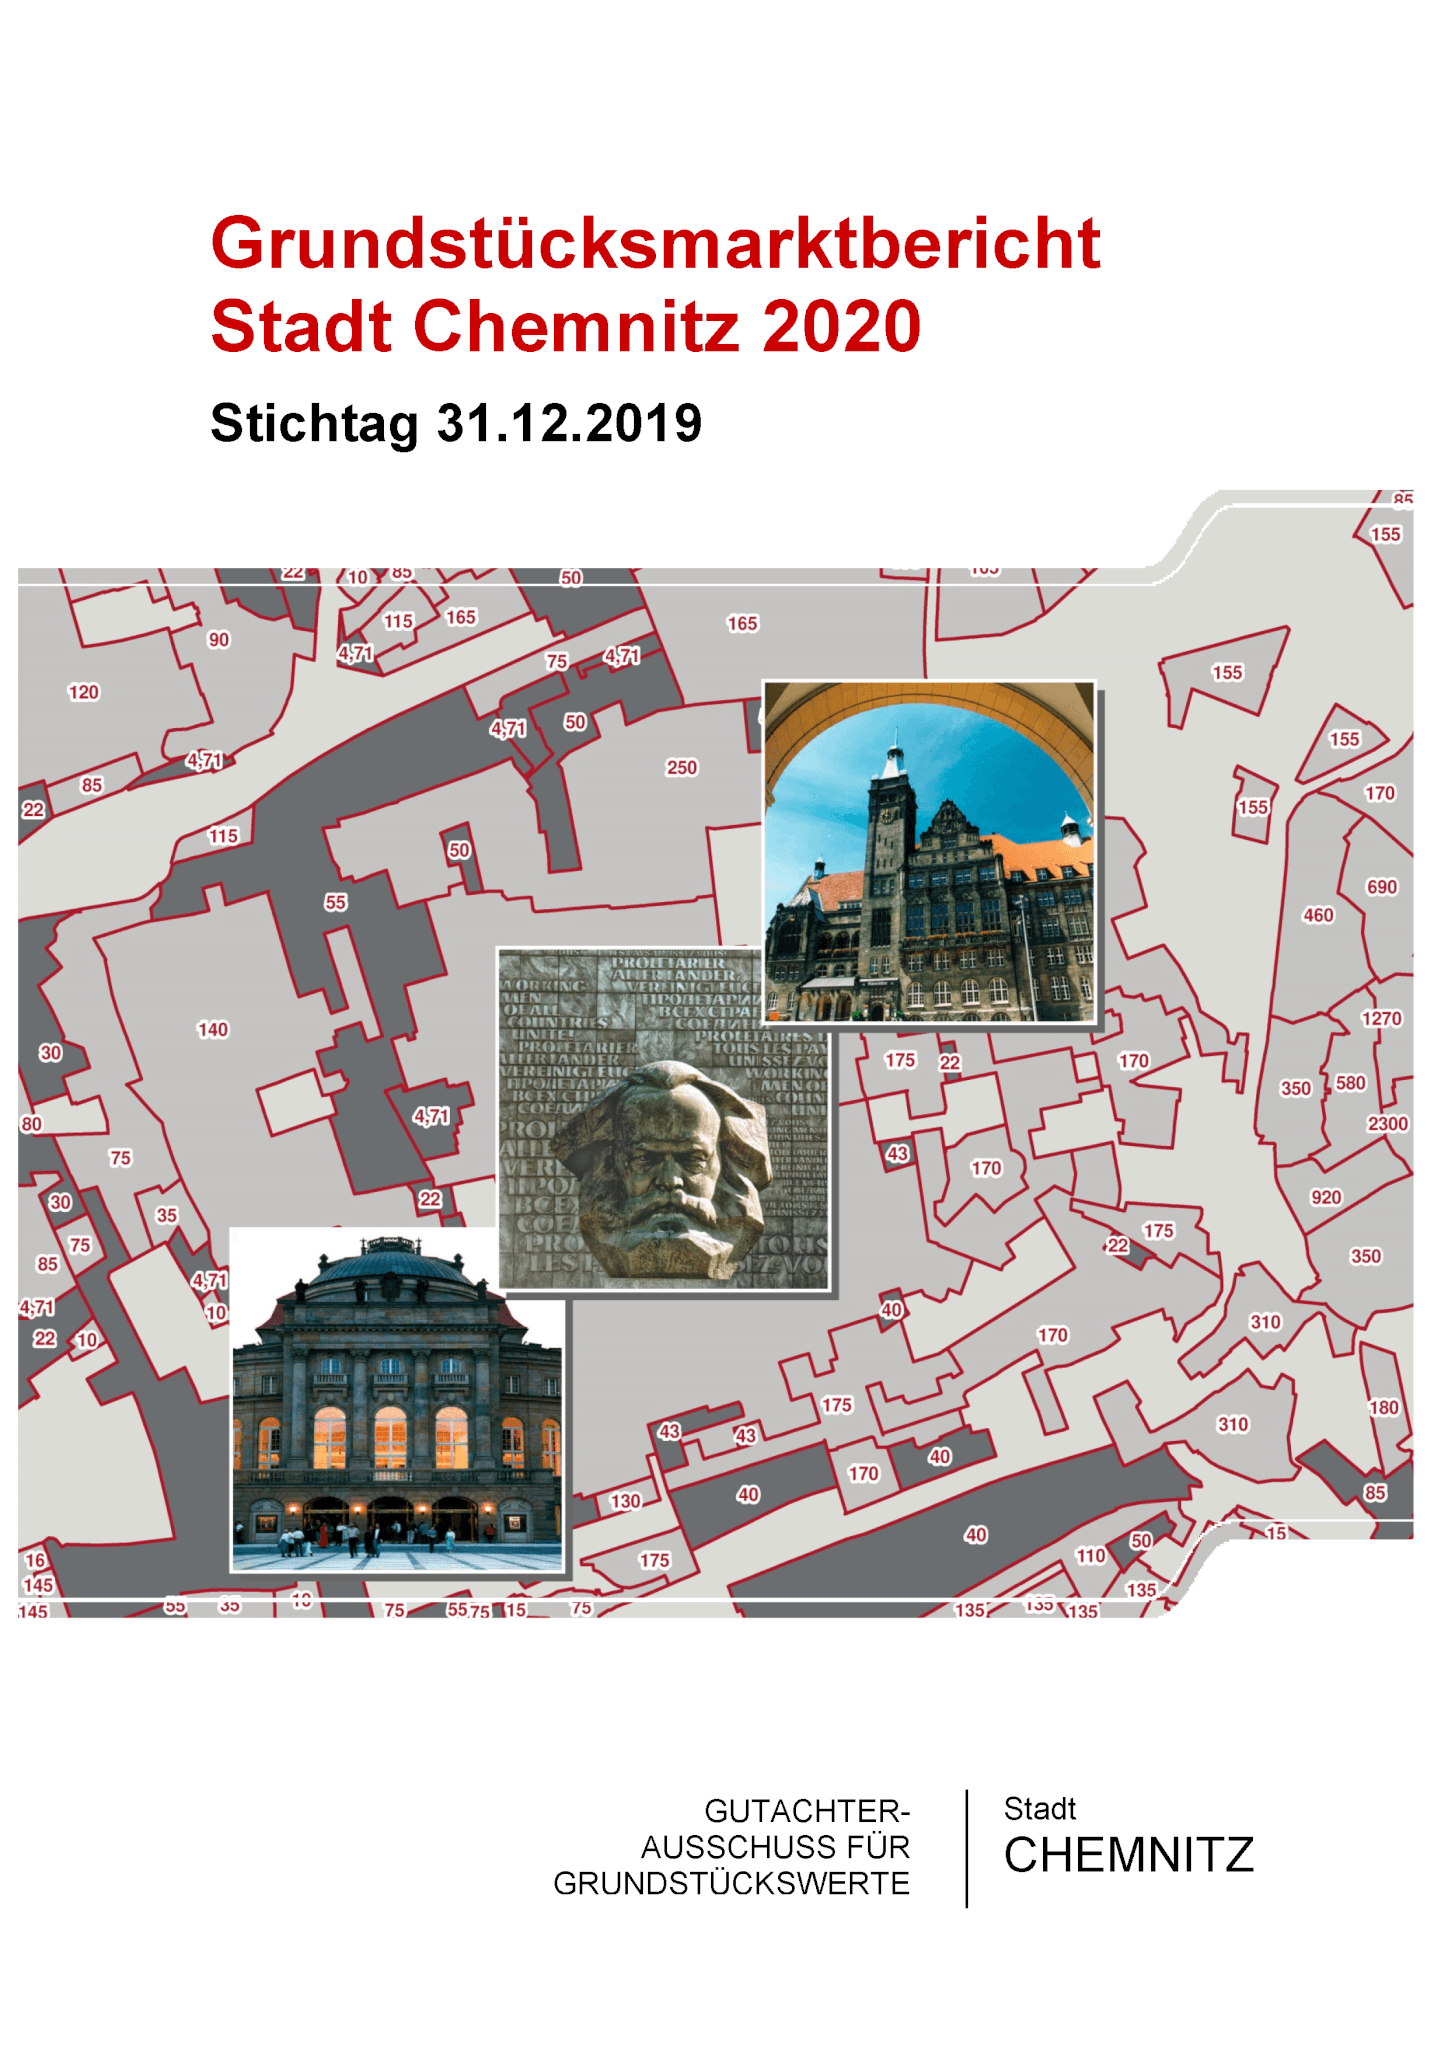 Grundstücksmarktbericht Chemnitz 2020 und neue Bodenrichtwerte veröffentlicht 5